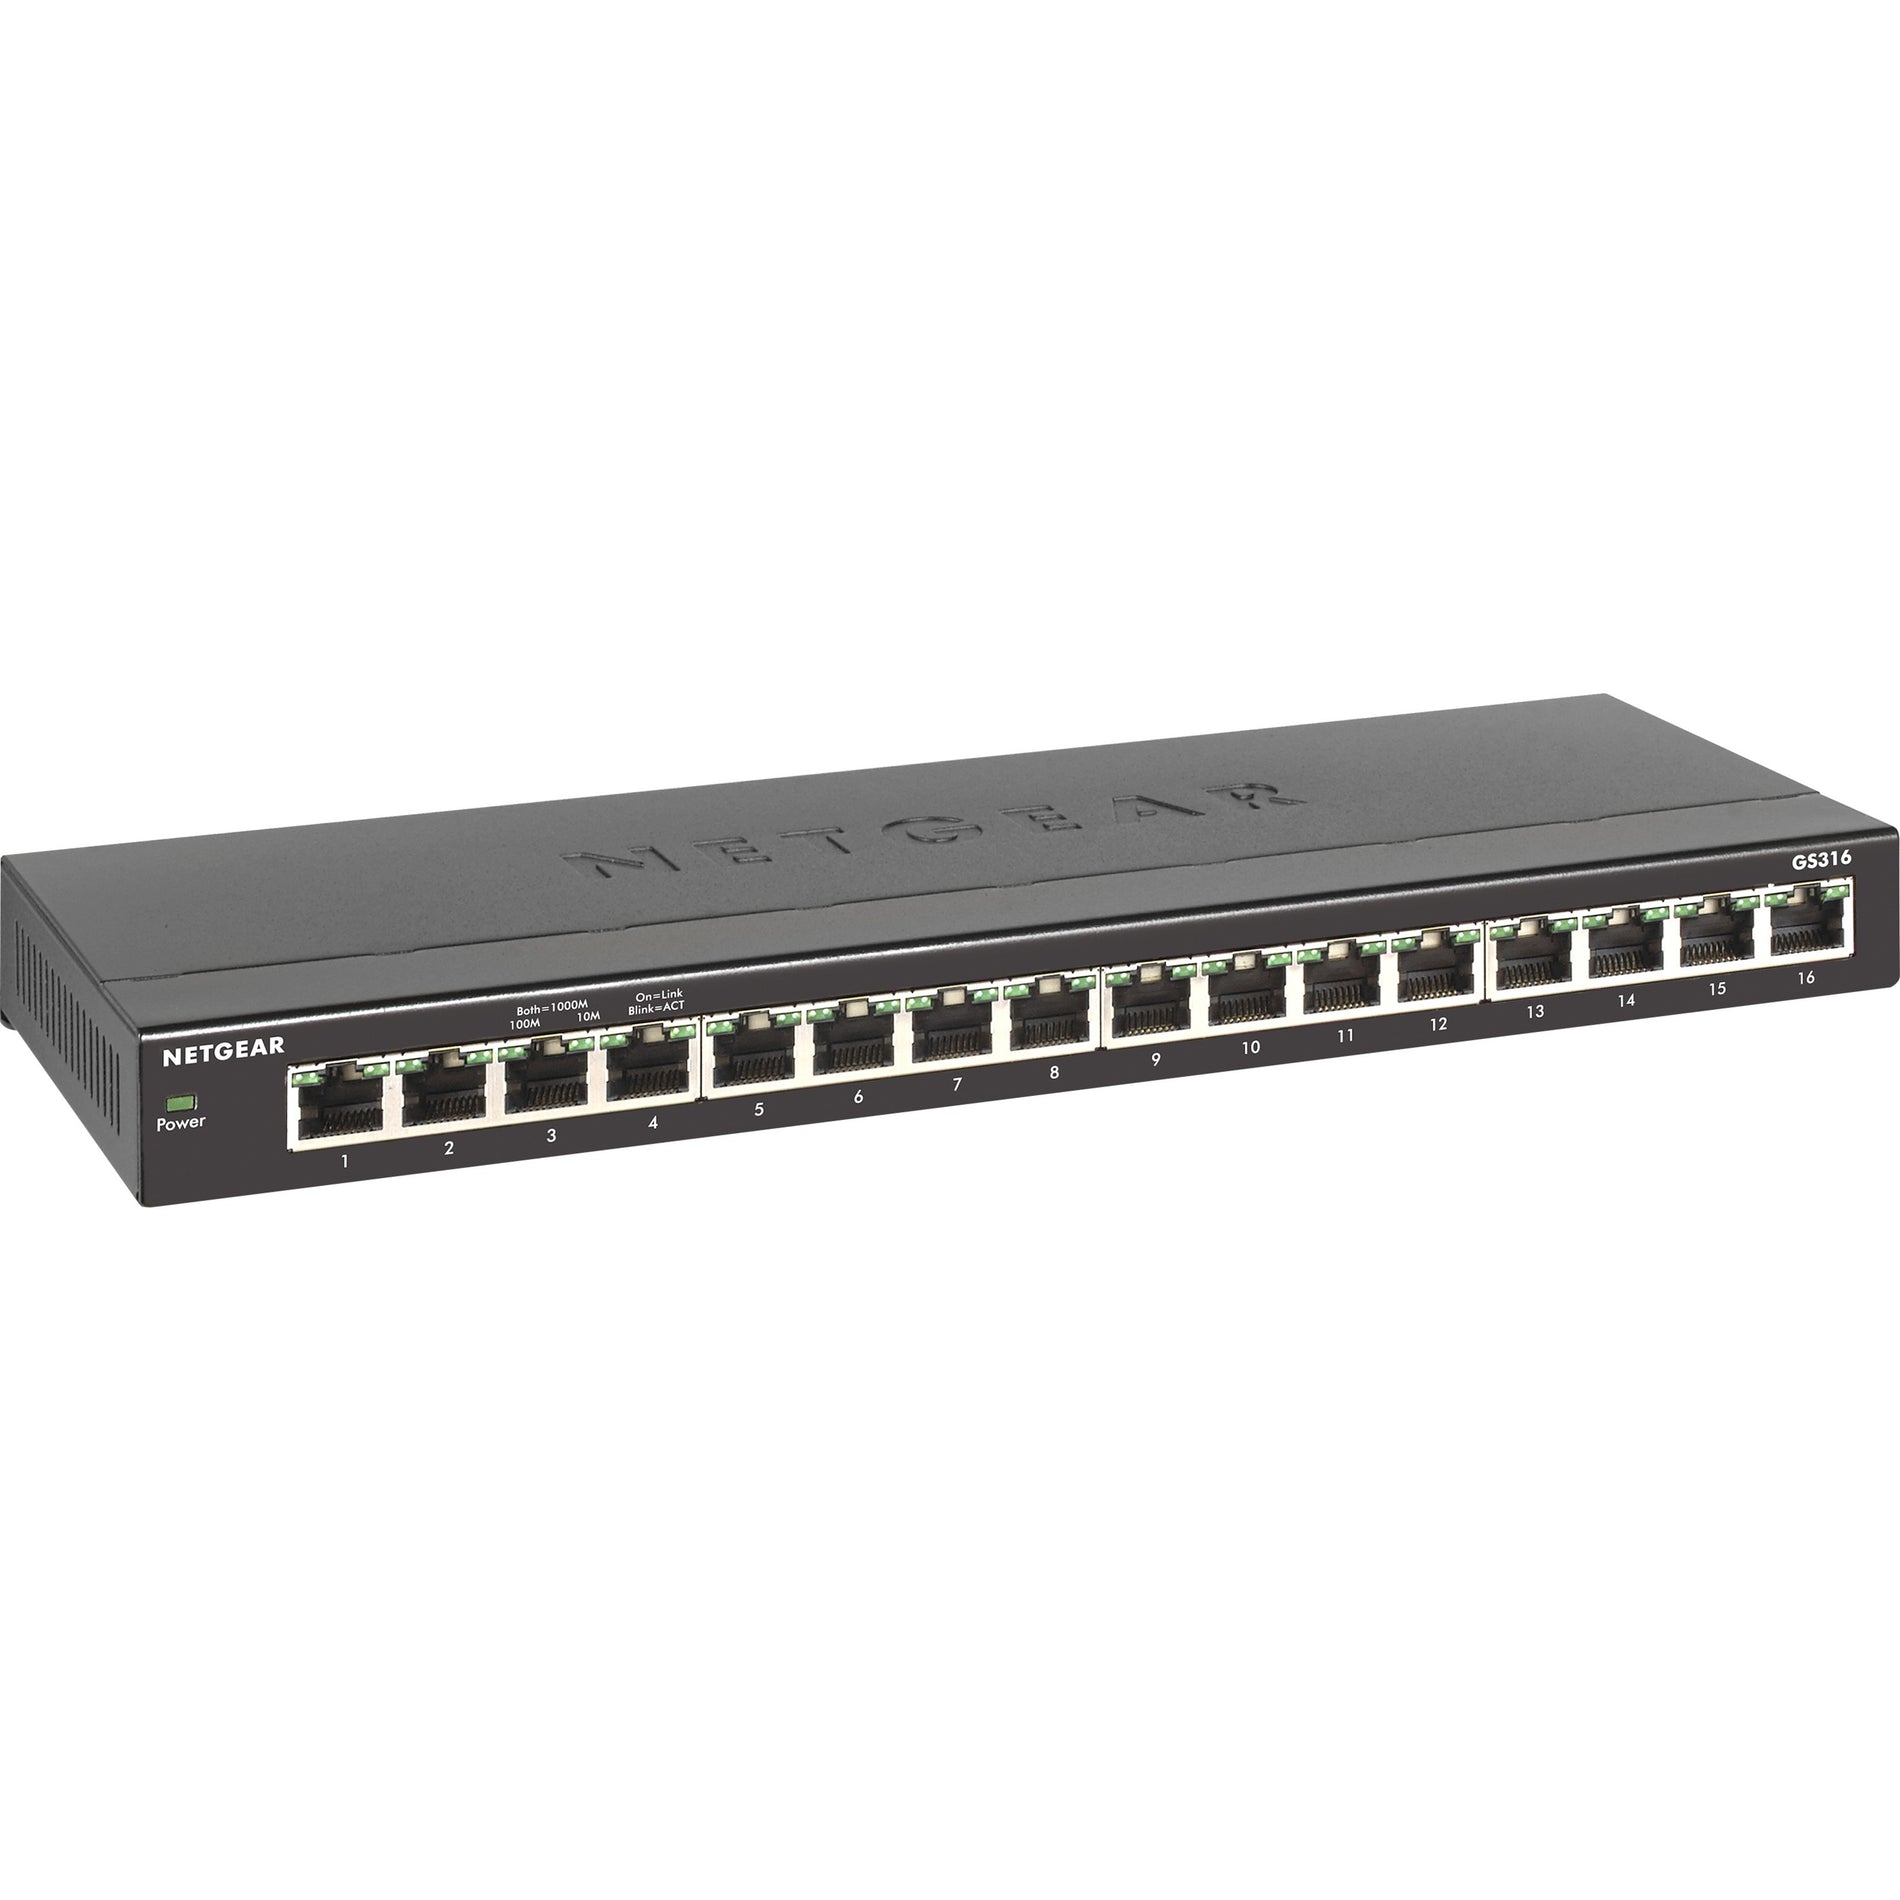 Netgear Ethernet Switch (GS316-100NAS)